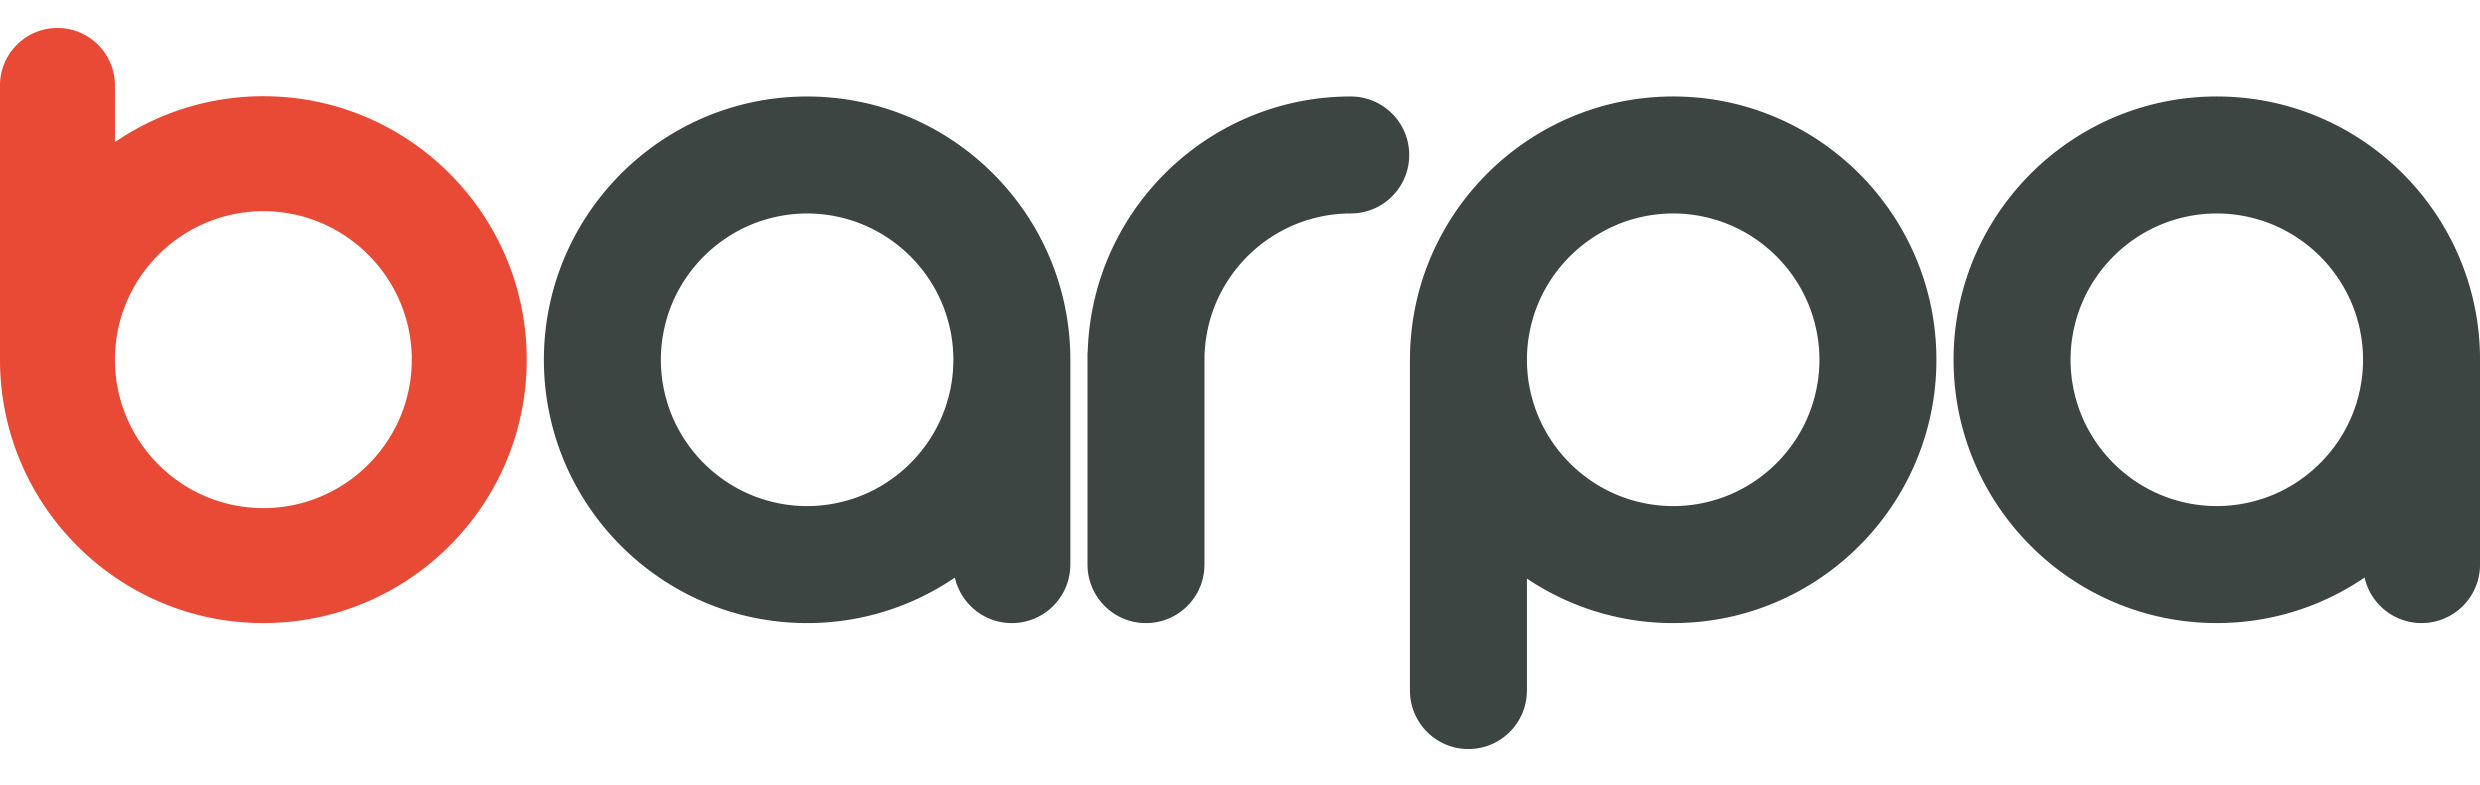 BARPA